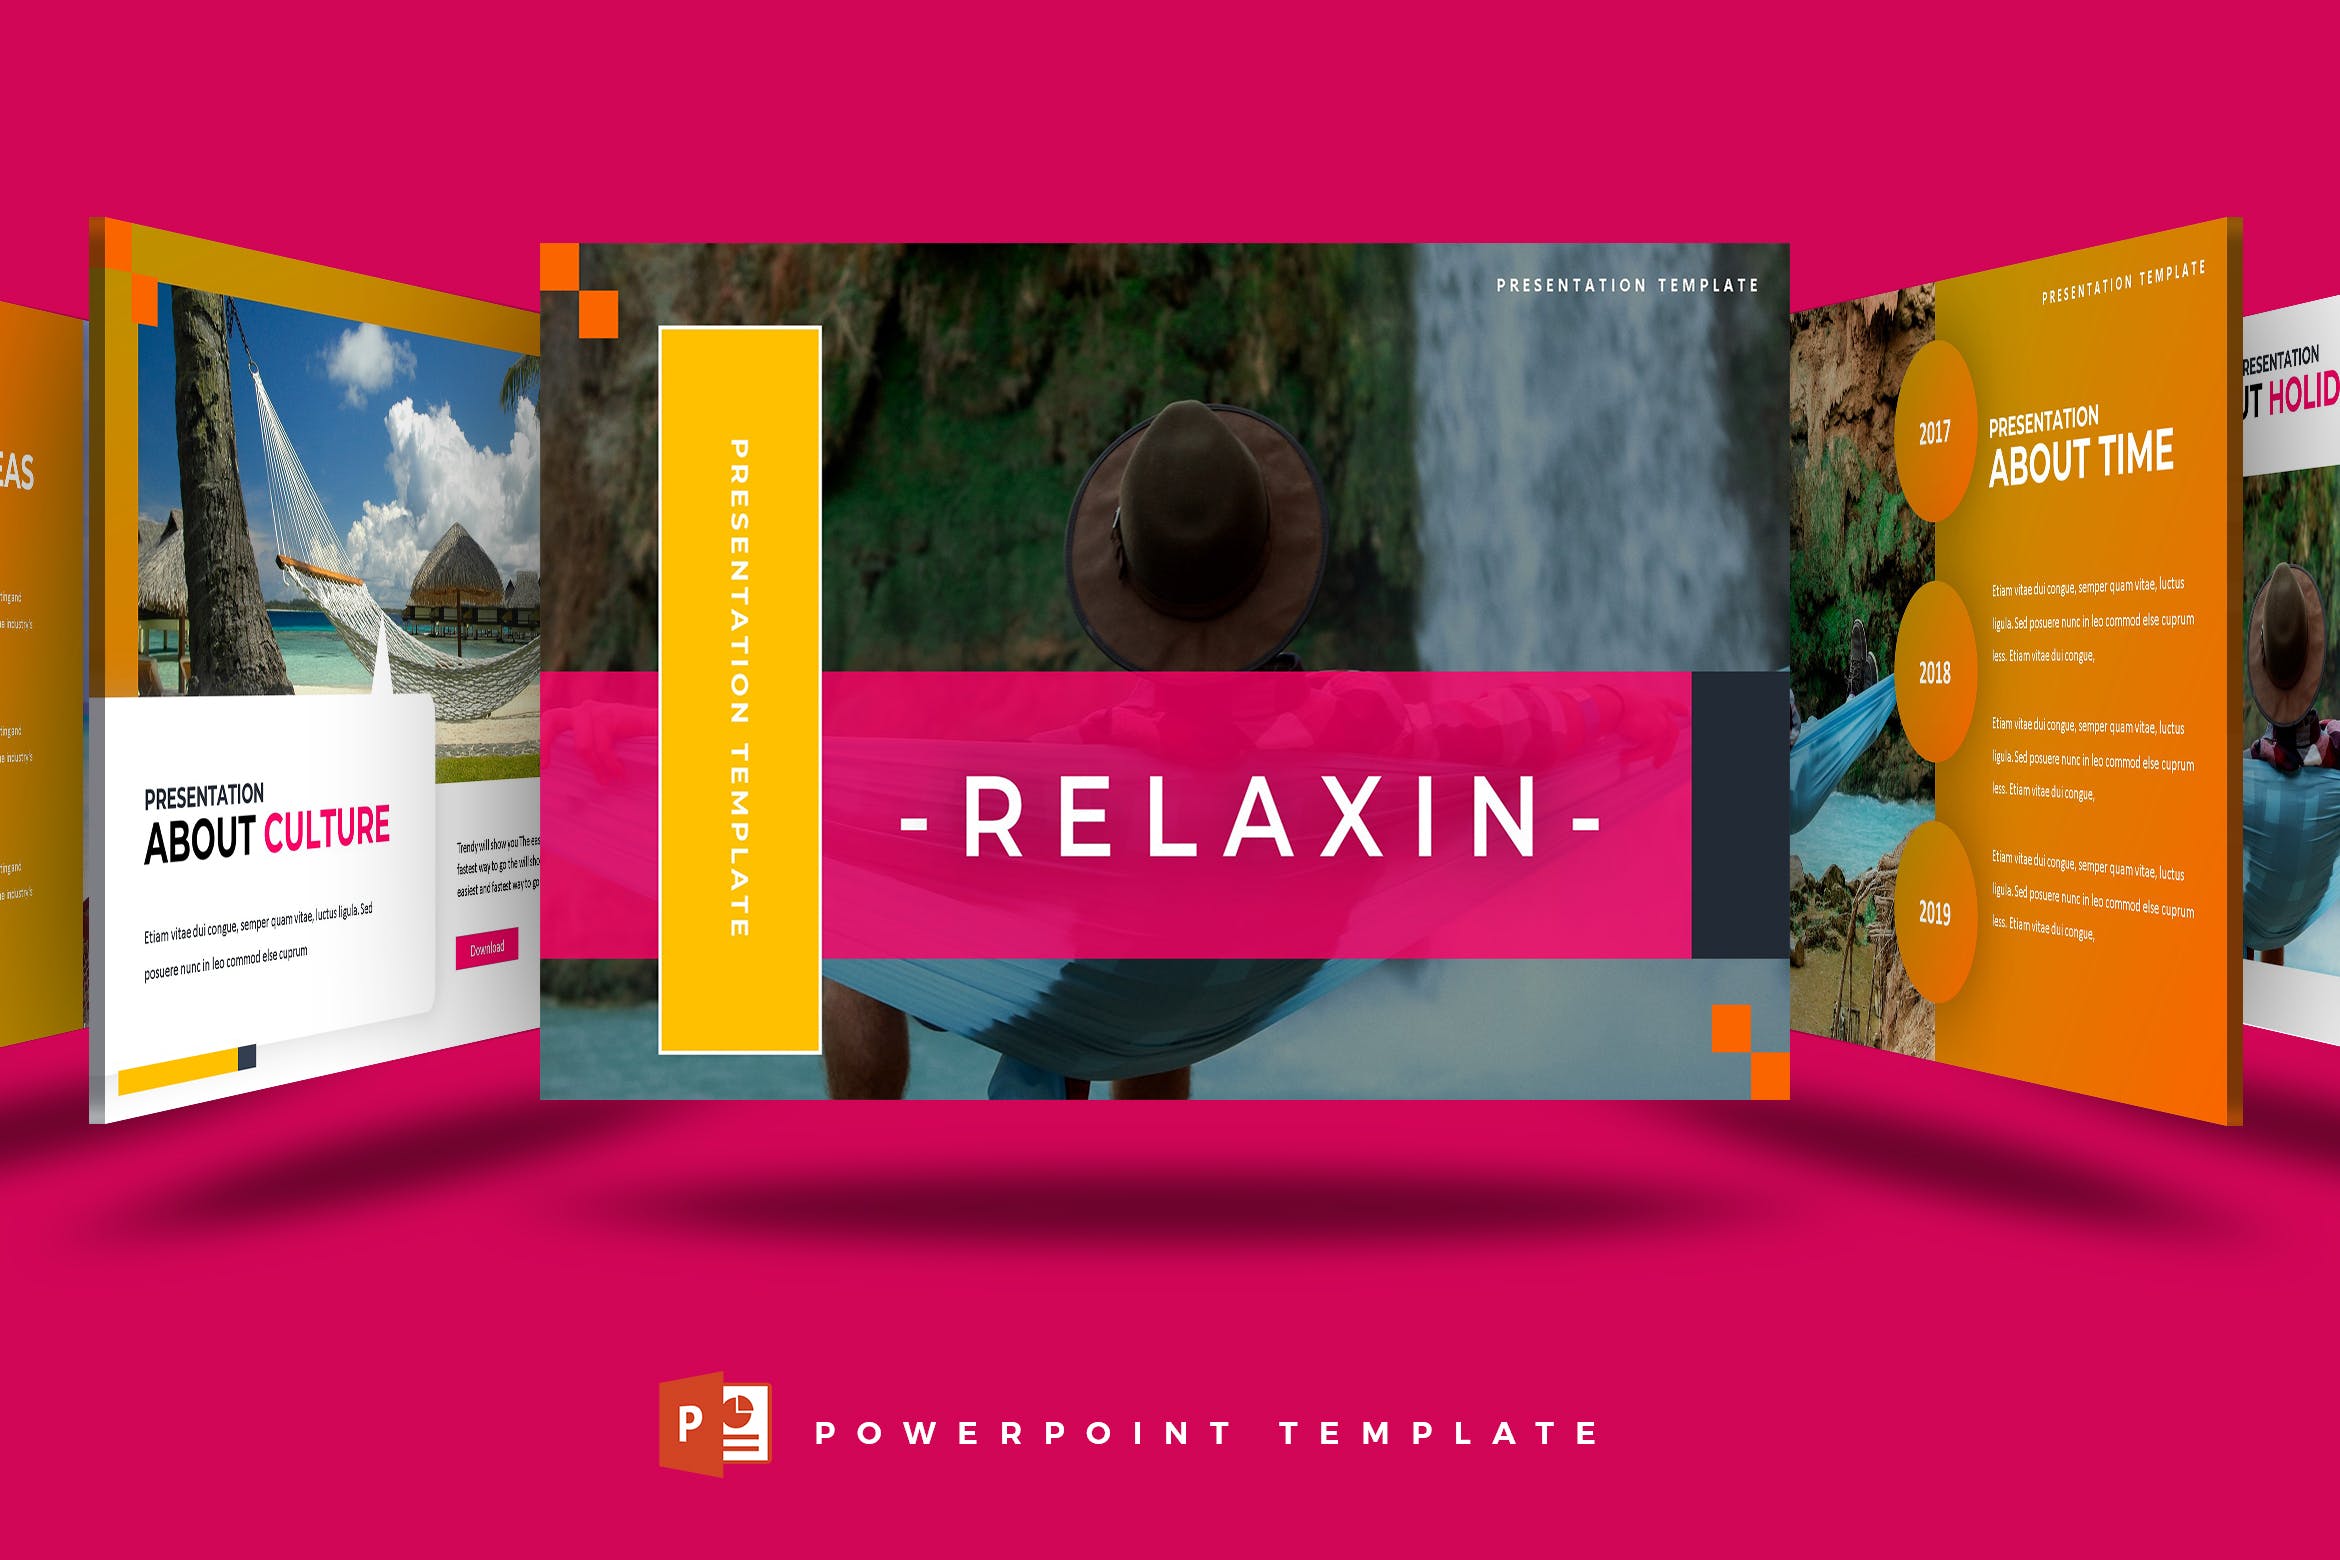 公司企业文化主题PPT模板下载 Relaxin – Powerpoint Template插图